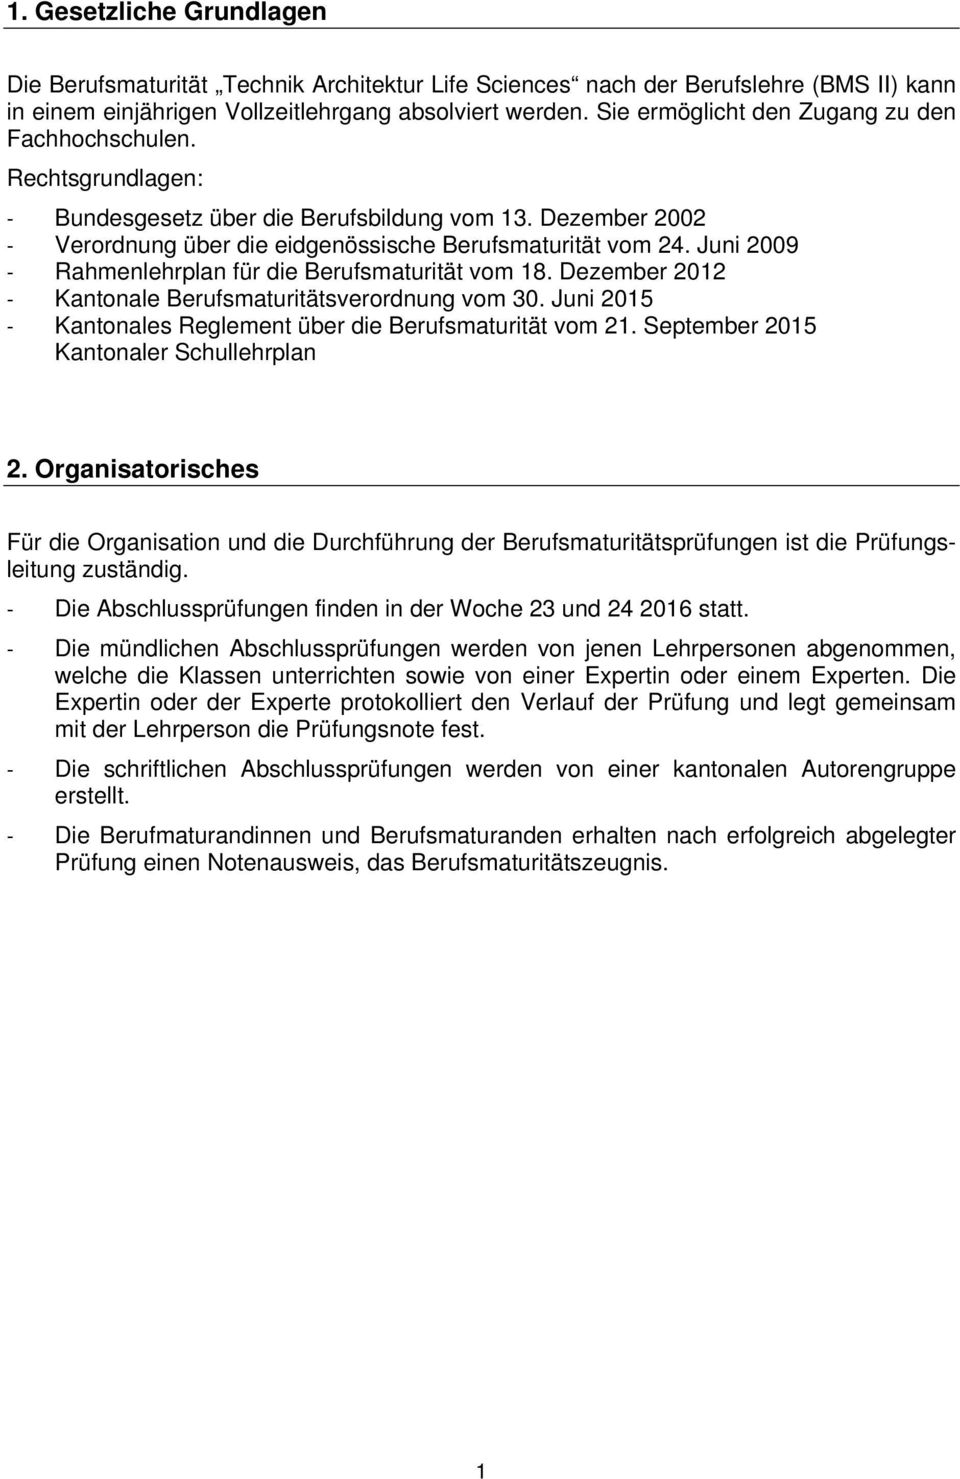 Juni 2009 - Rahmenlehrplan für die Berufsmaturität vom 18. Dezember 2012 - Kantonale Berufsmaturitätsverordnung vom 30. Juni 2015 - Kantonales Reglement über die Berufsmaturität vom 21.